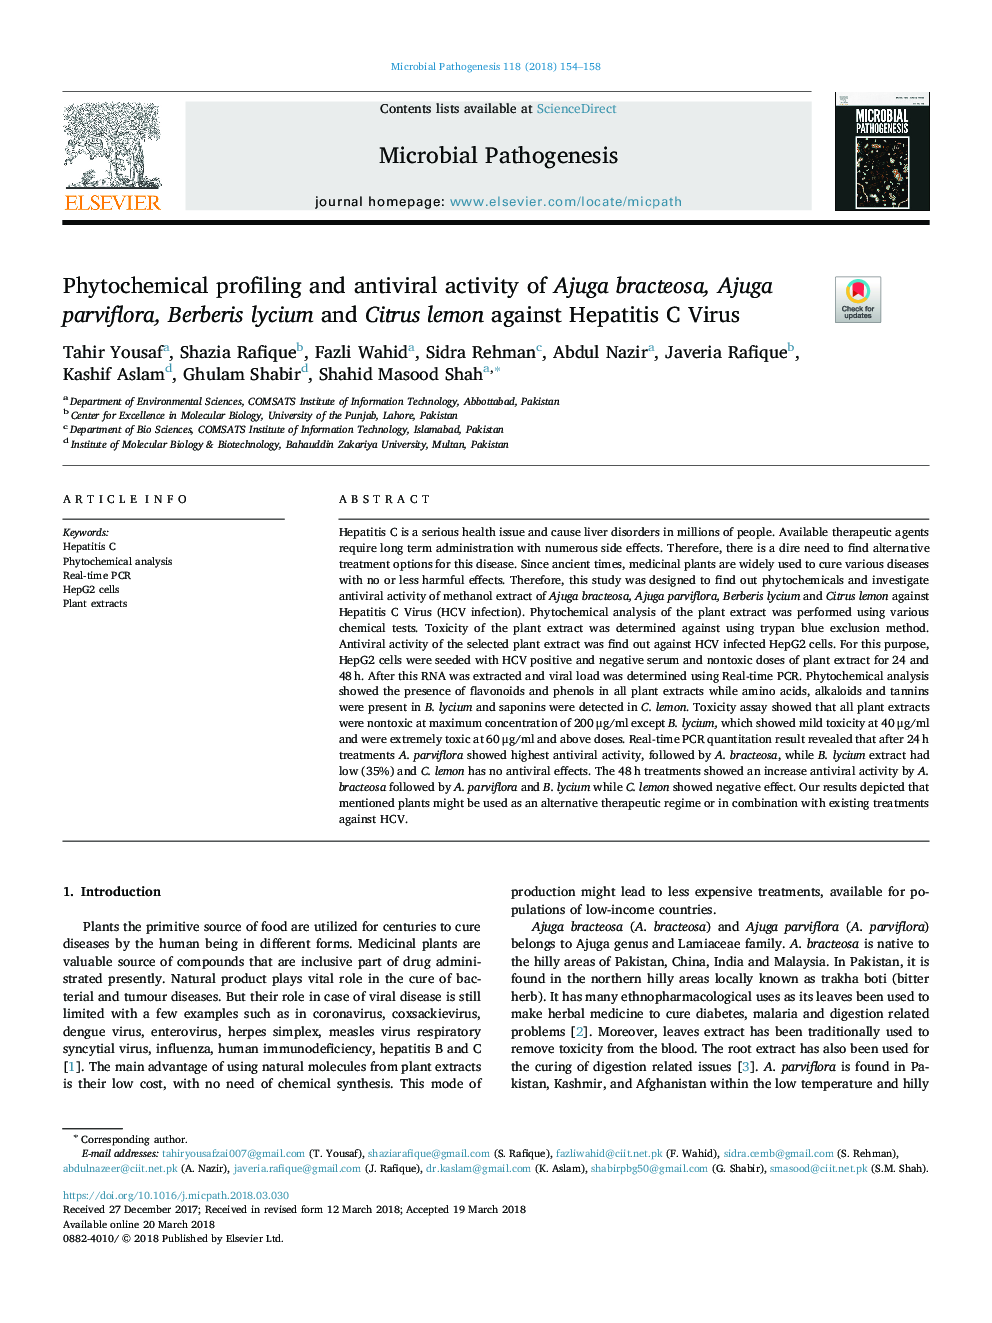 Phytochemical profiling and antiviral activity of Ajuga bracteosa, Ajuga parviflora, Berberis lycium and Citrus lemon against Hepatitis C Virus